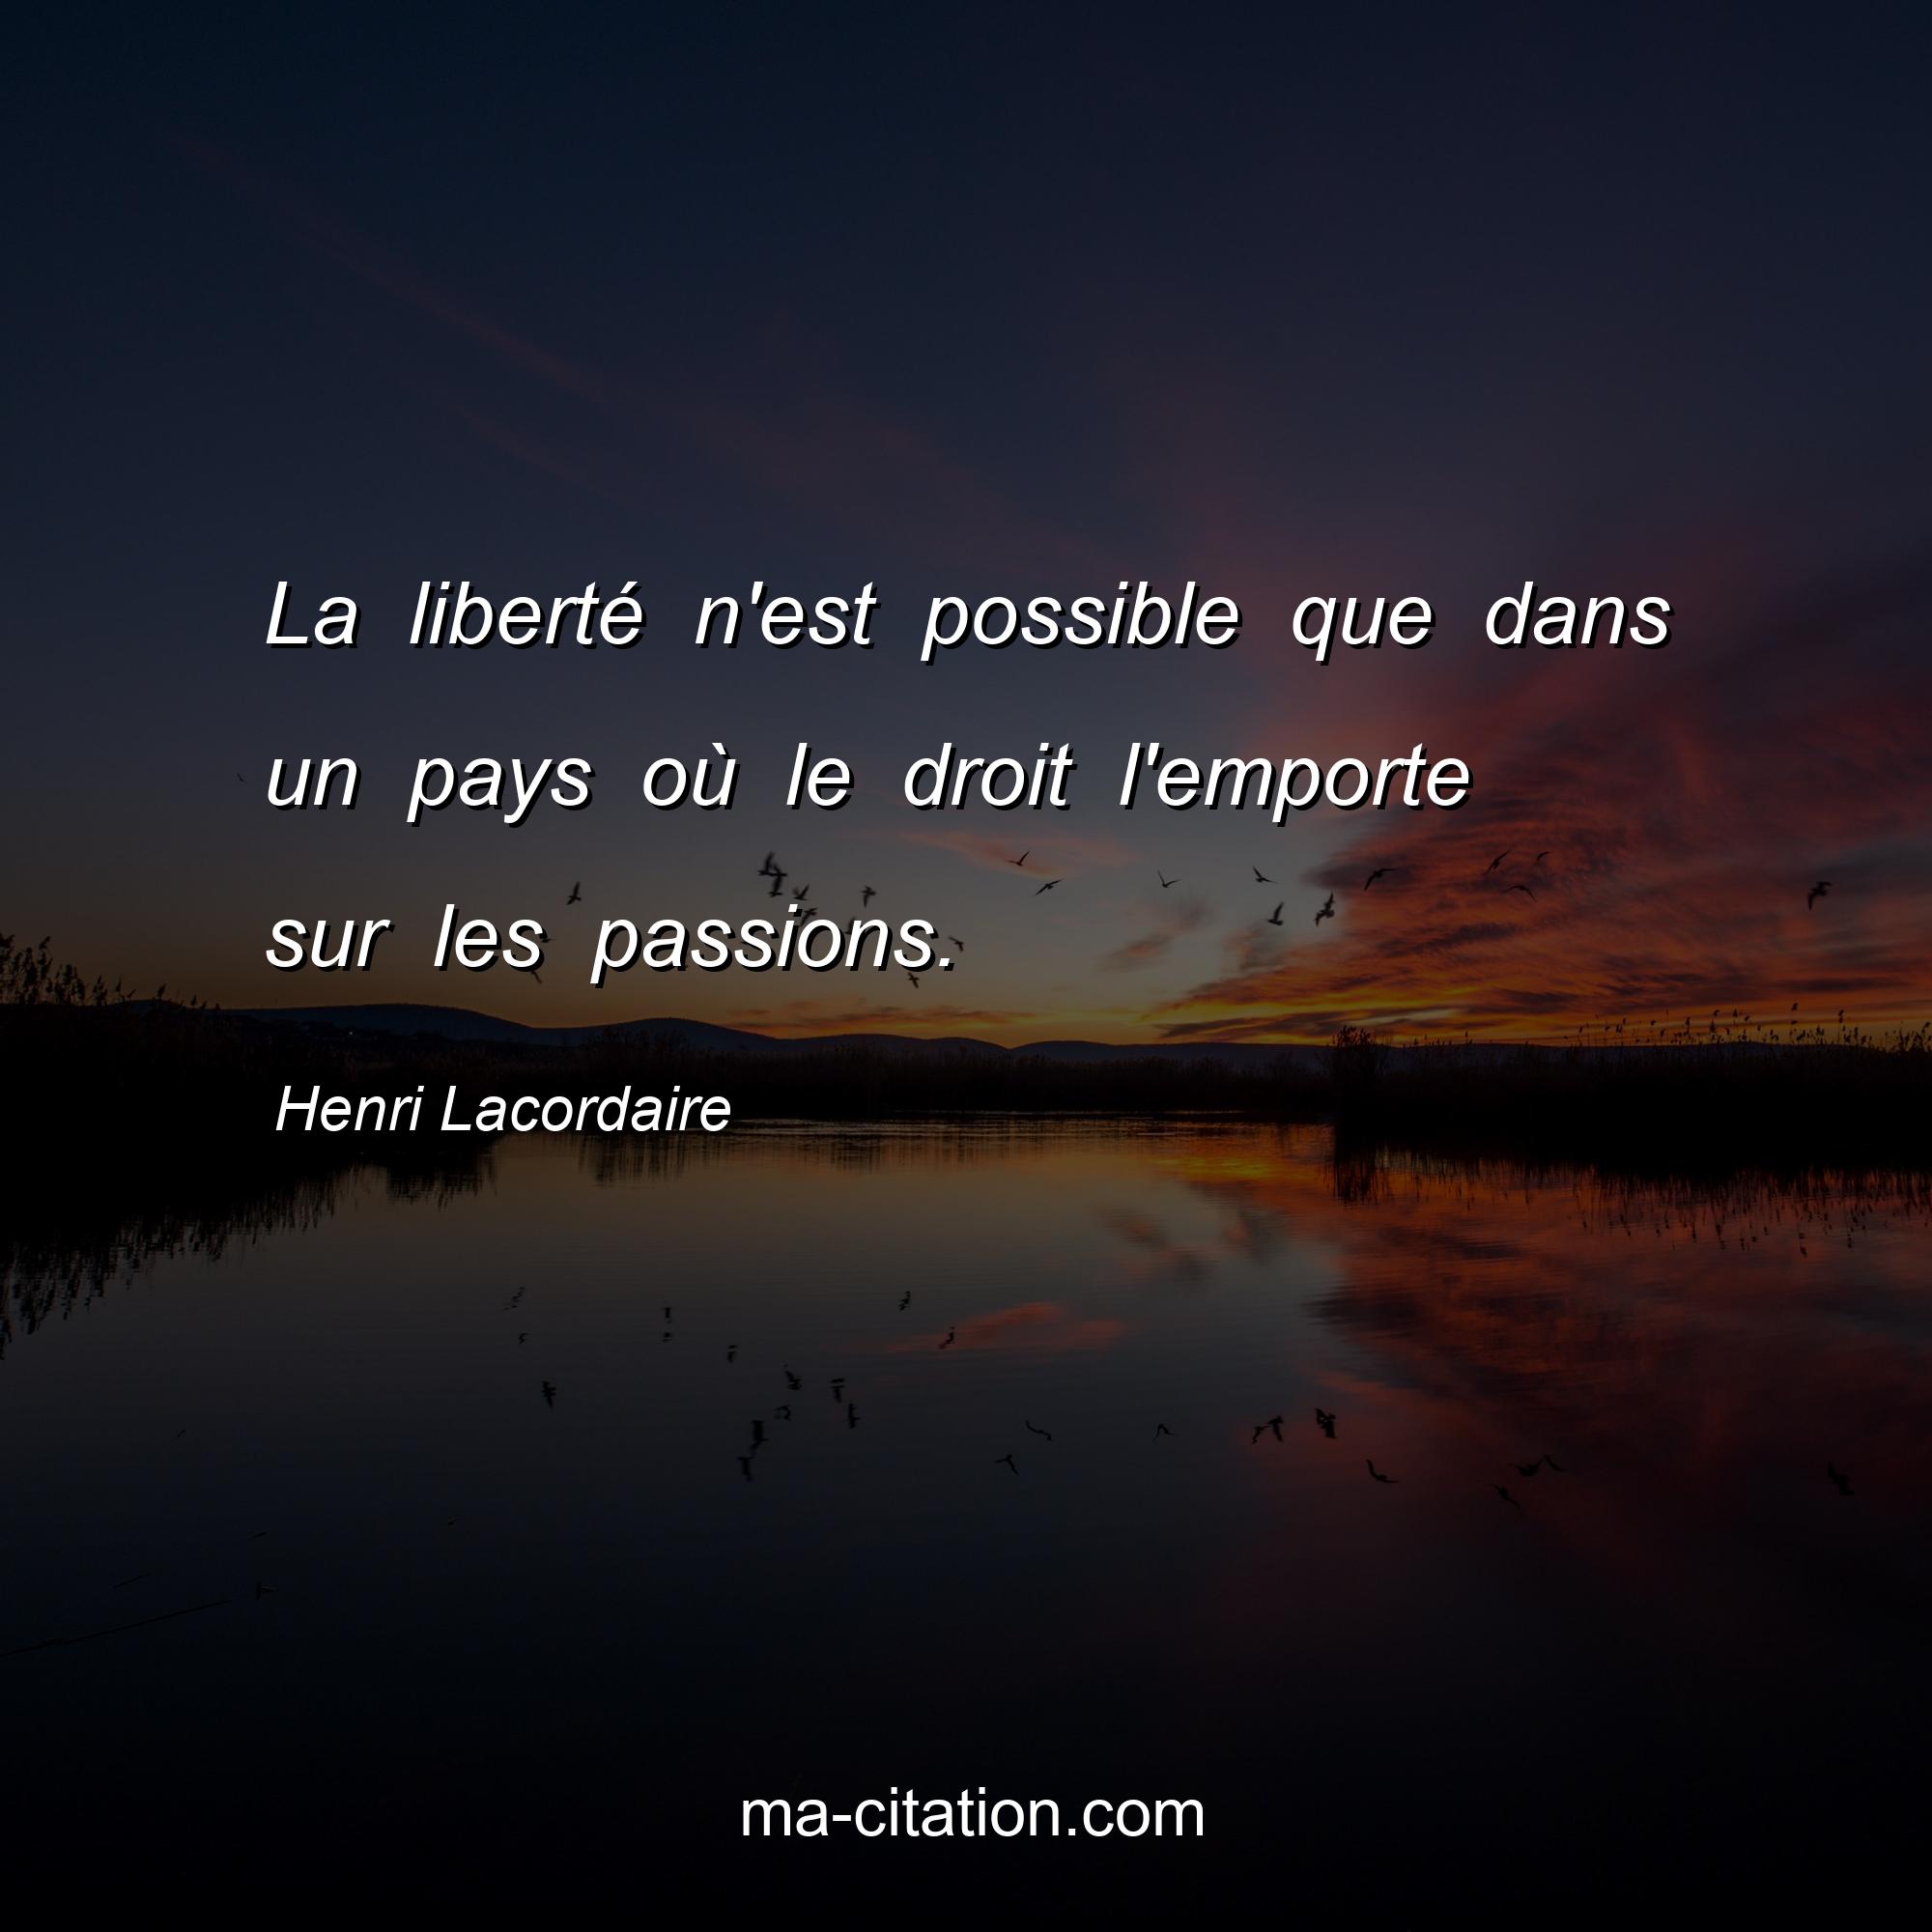 Henri Lacordaire : La liberté n'est possible que dans un pays où le droit l'emporte sur les passions.